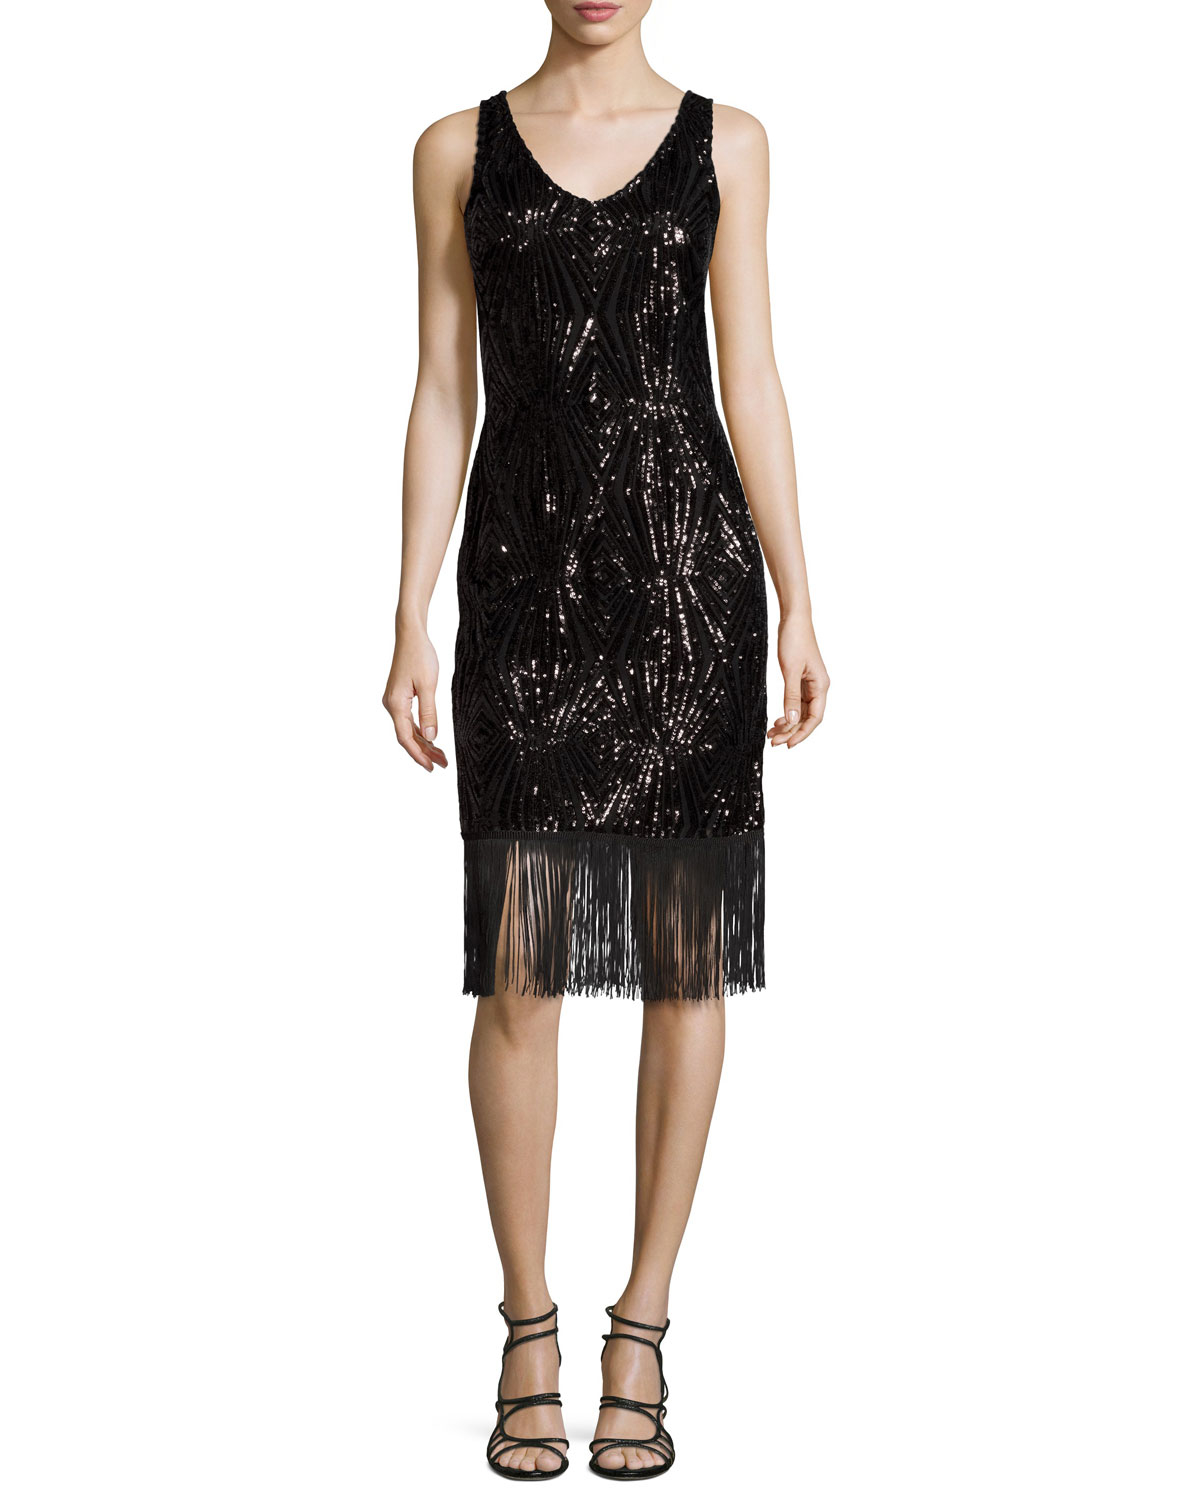 Lyst - Julia Jordan Sequin Sheath Dress W/fringe in Black